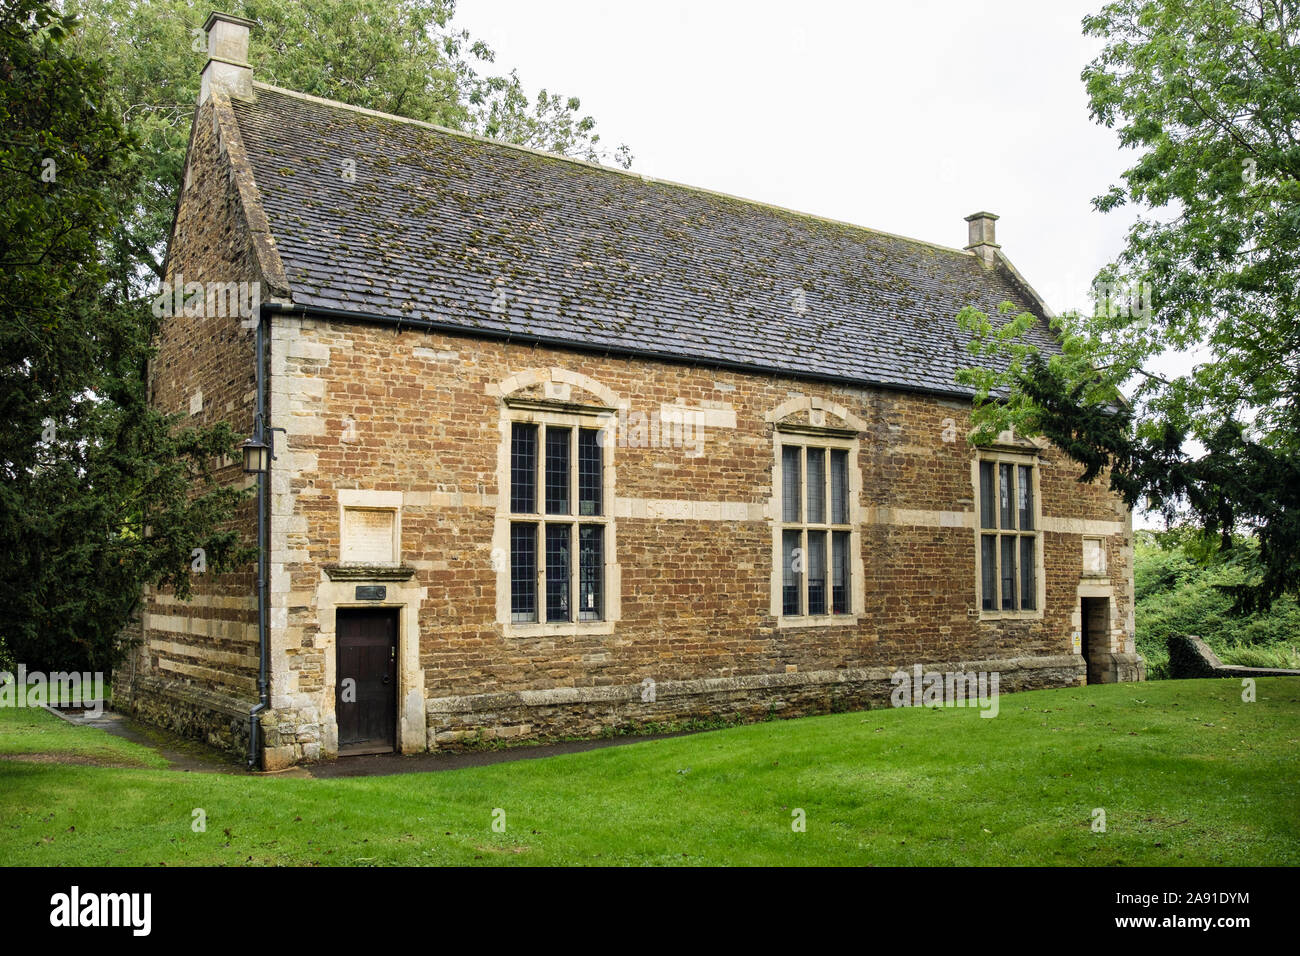 L'ancien bâtiment en pierre de l'école vers 1584 avec toiture en ardoise a été restauré en 1994. Cutts Fermer Park, Oakham, Rutland, England, UK, Grande-Bretagne Banque D'Images